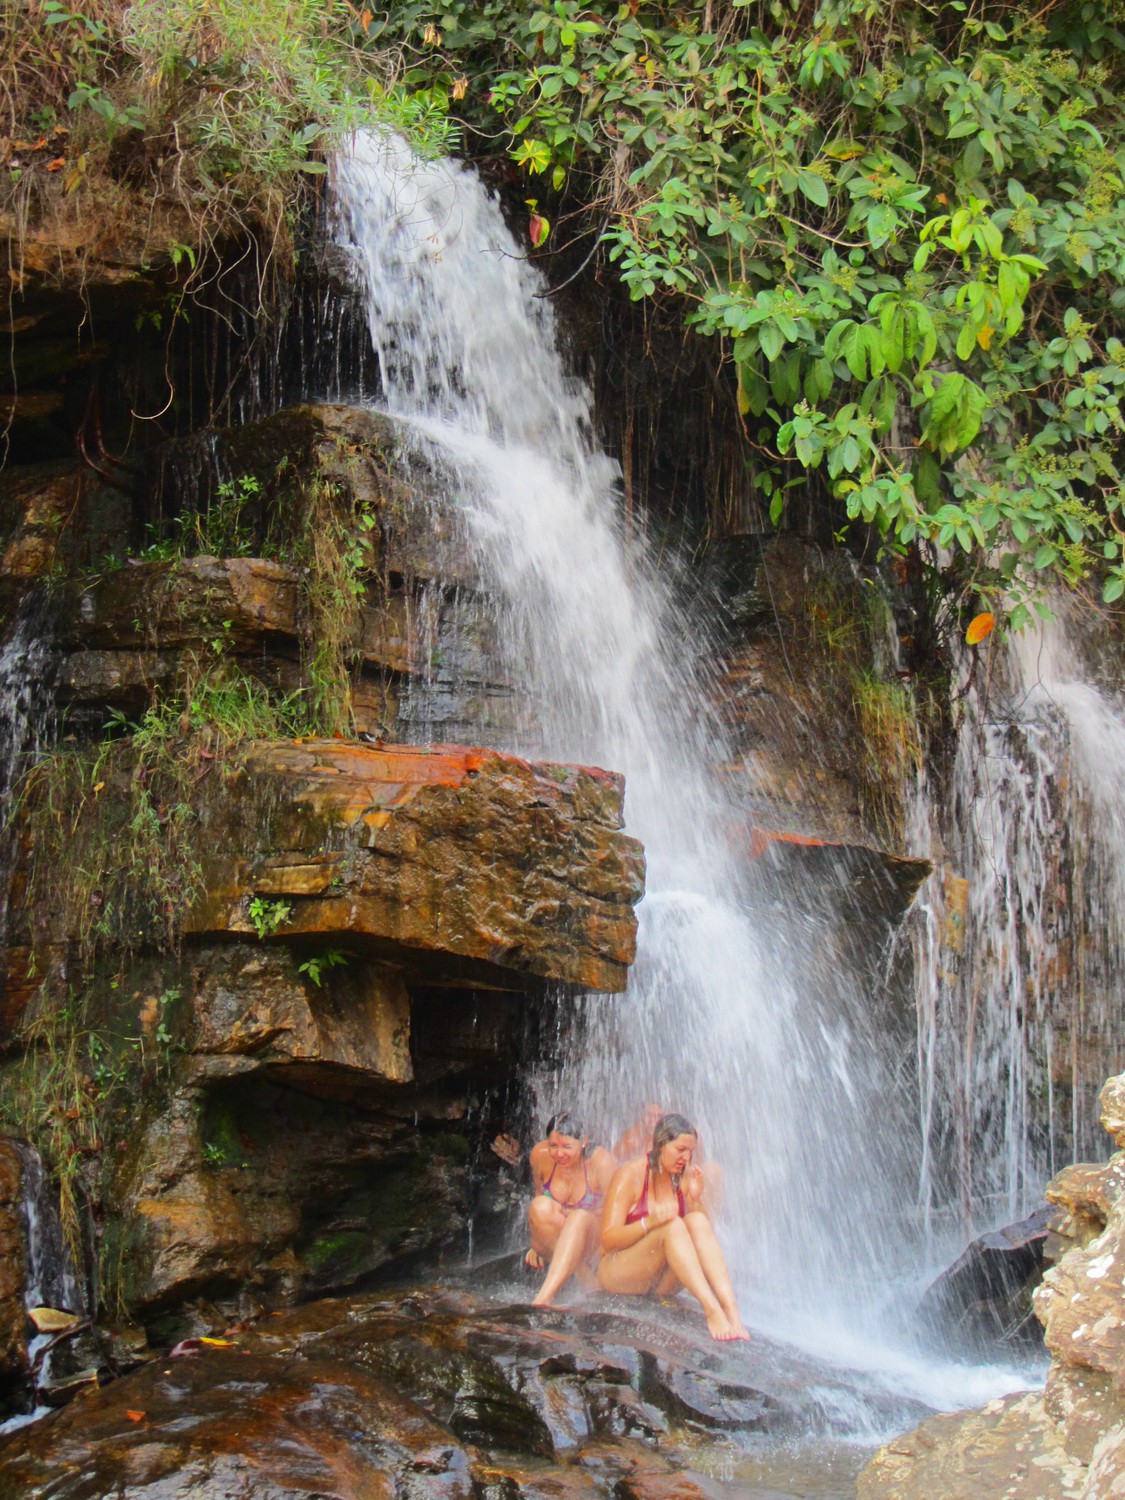 Mermaids of the Cachoeira Usina Velha